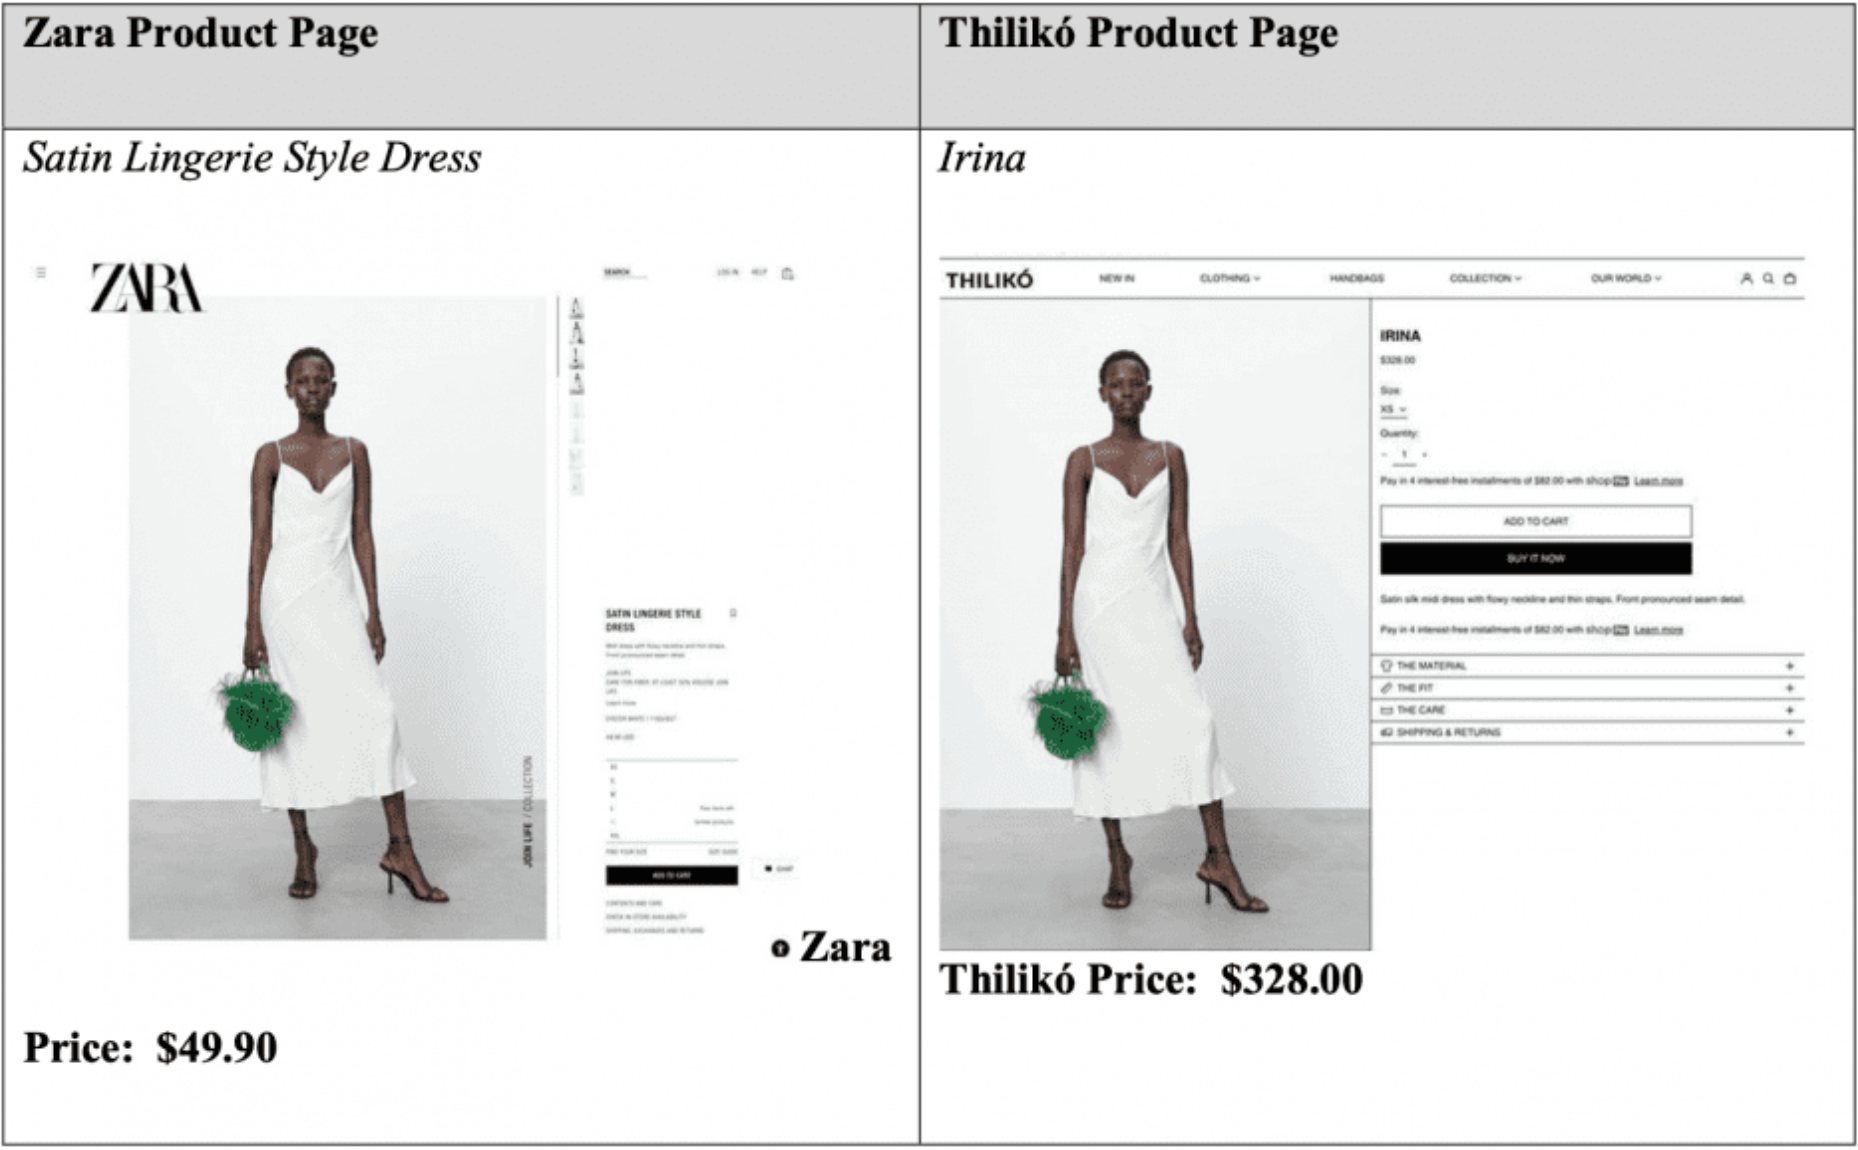 Imagen comparativa de las páginas web de Zara y Thiliko con la misma foto de un vestido en ambas y los diferentes precios.